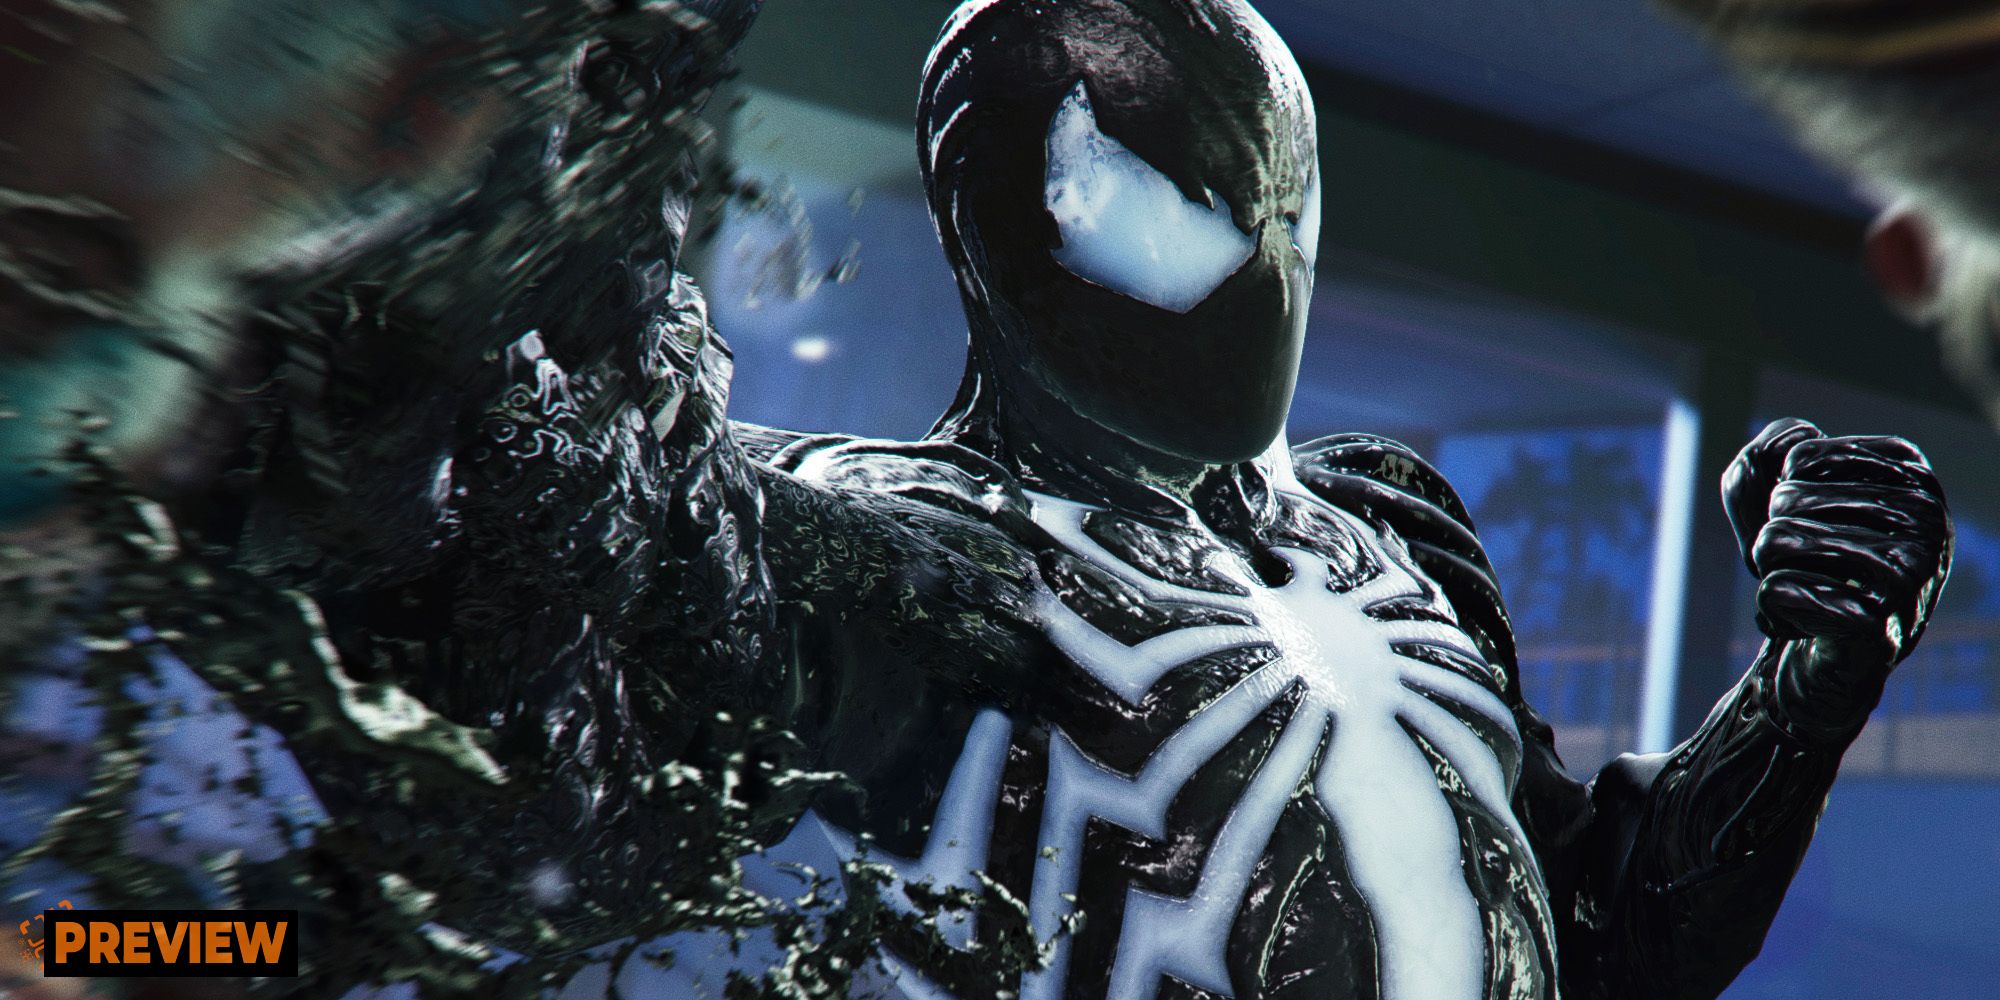 Marvel's Spider-Man 2 is a little darker than the original